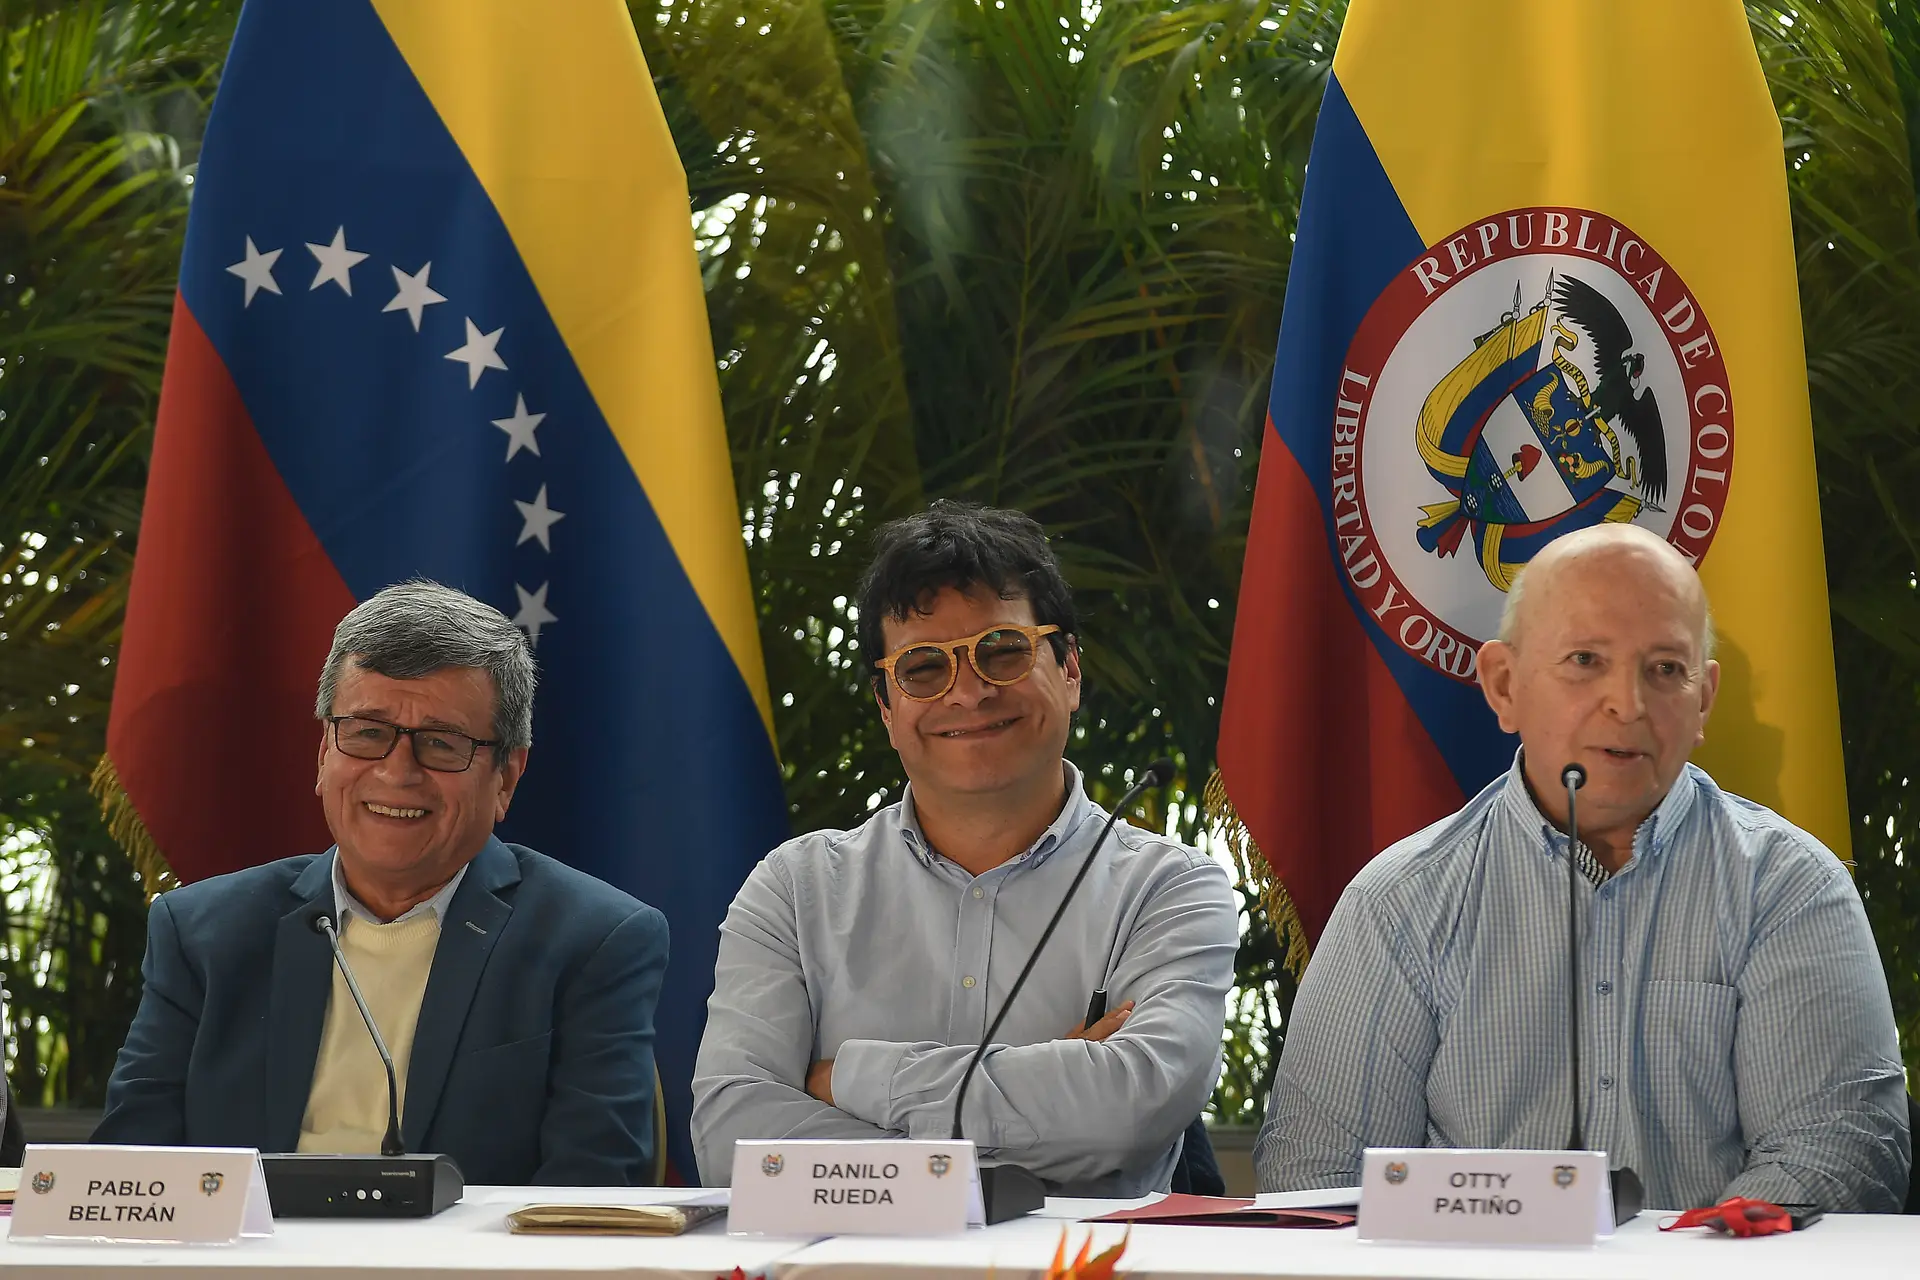 Pablo Beltran, à esquerda, representando a guerrilha colombiana Exército de Libertação Nacional (ELN), Ivan Danilo Rueda, Alto Comissário para a Paz em nome do governo colombiano, ao centro, e Otty Pantino, da delegação do governo colombiano